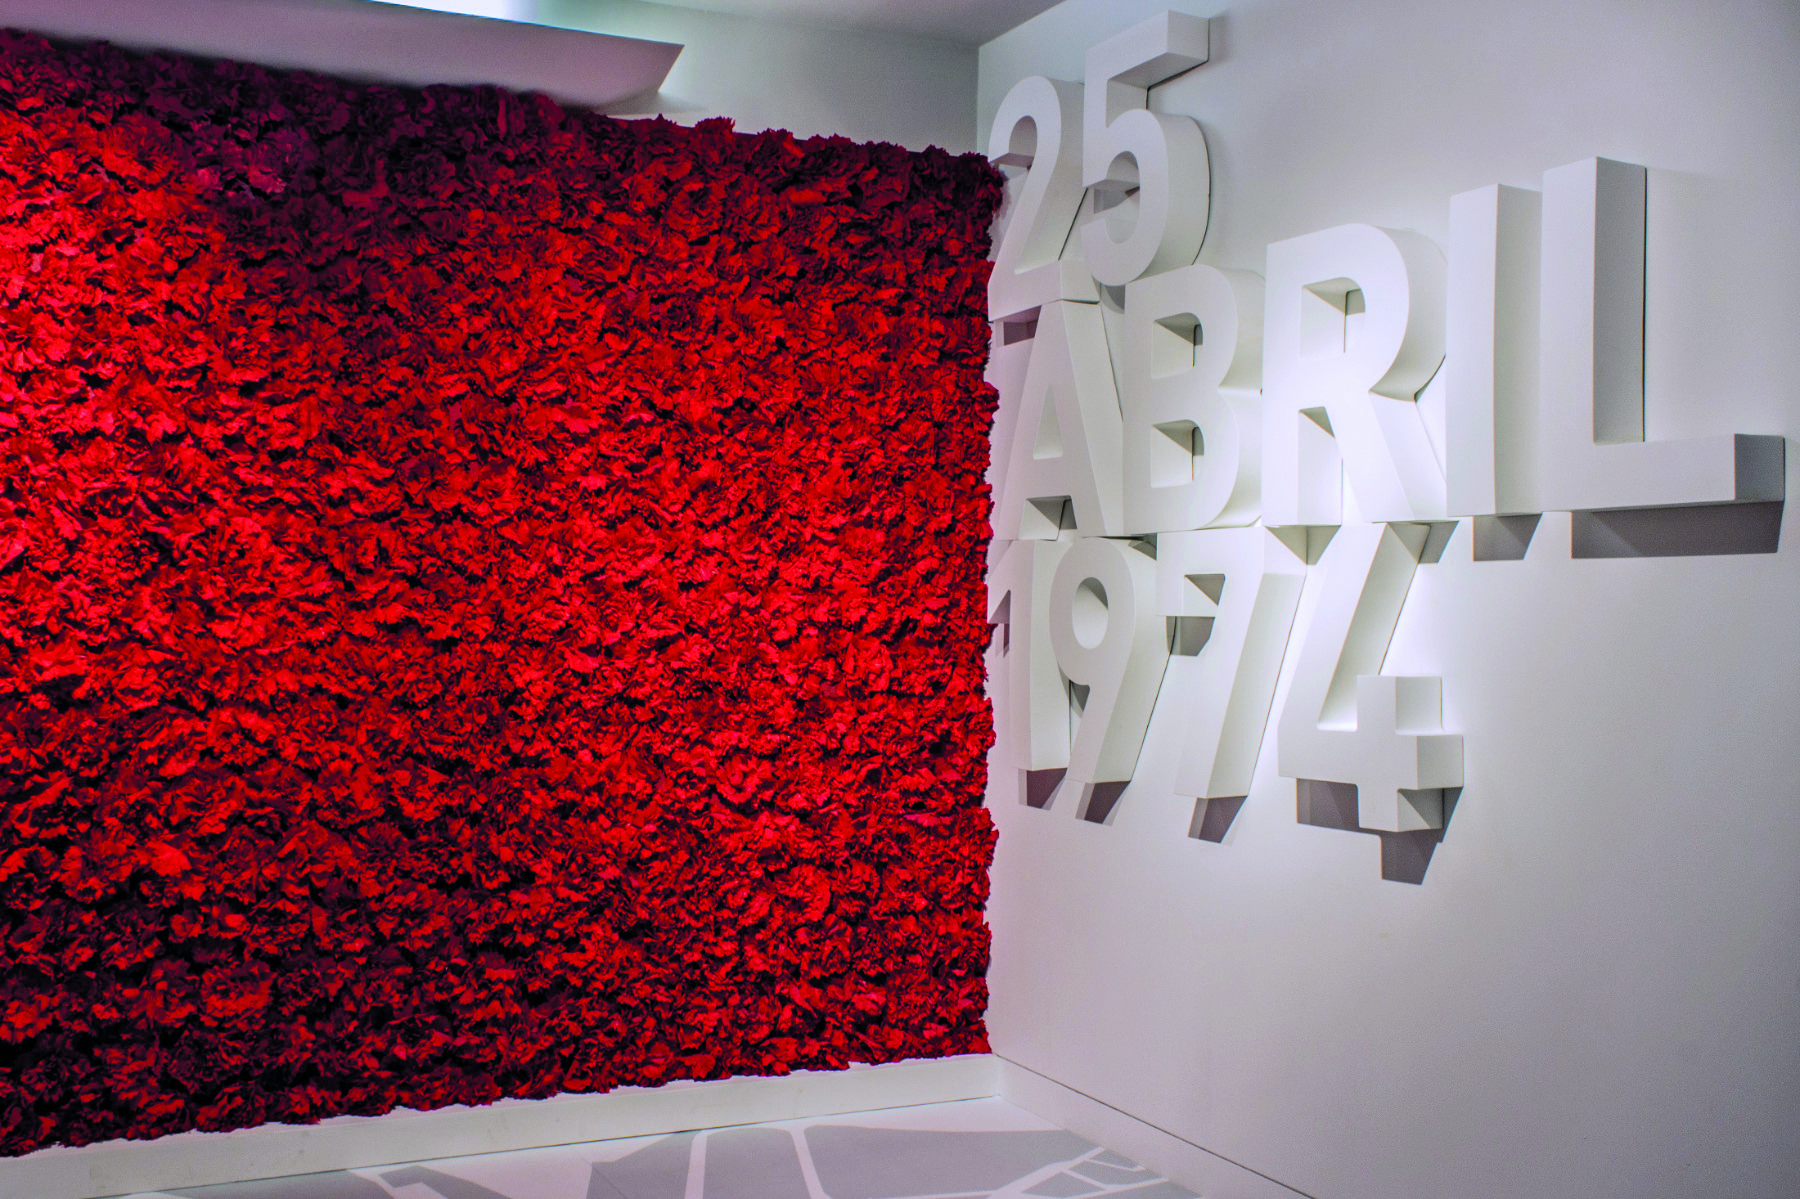 Fotografia. Um mural de superfície vermelha e textura simulando flores. Ao lado, o texto: '25 ABRIL 1974', escritos em relevo sobre a parede.